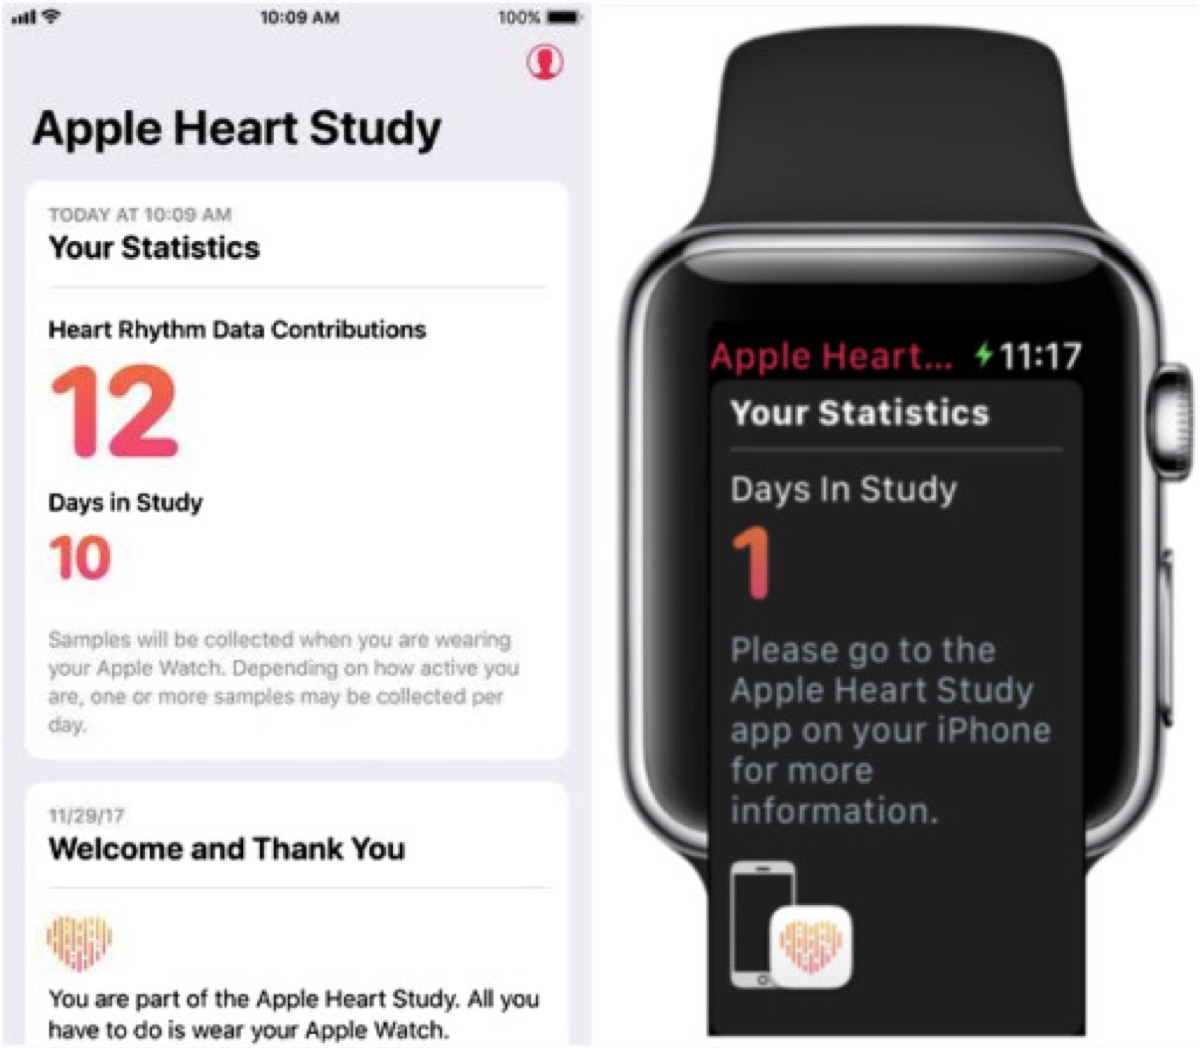 Apple Heart Study al termine nel 2019, partecipanti fondamentali per lo studio